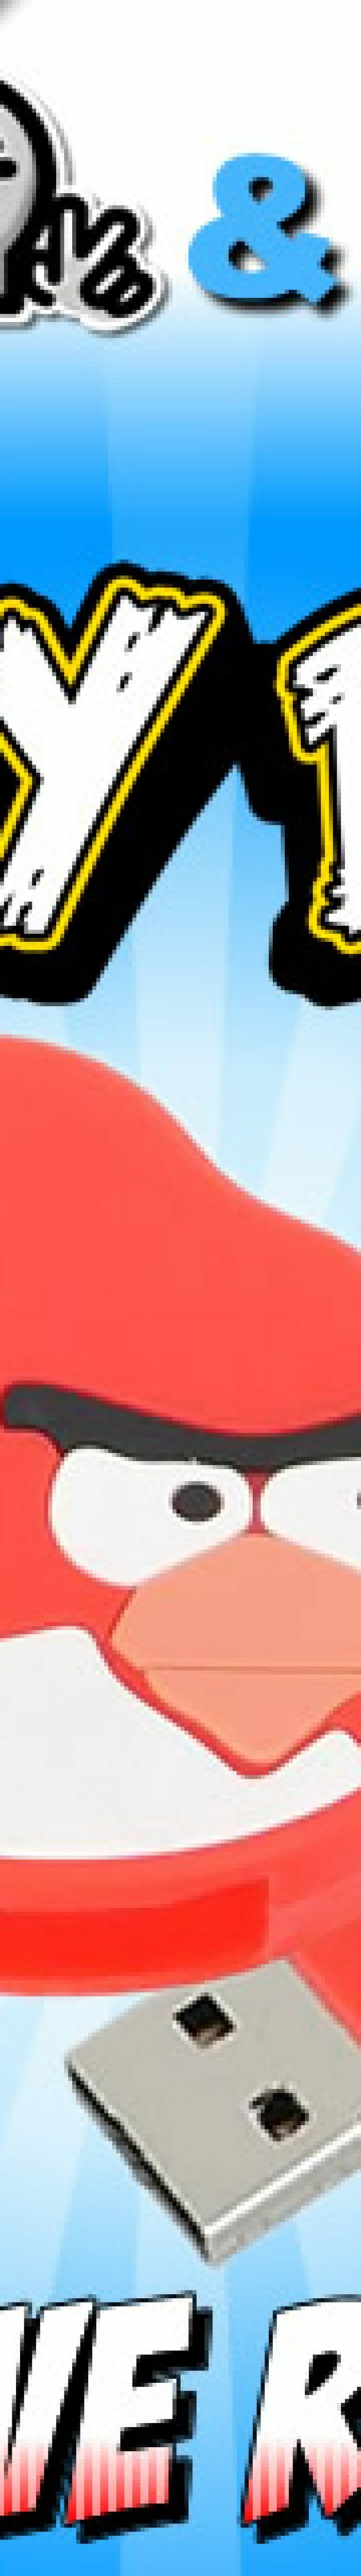 Resultado Promoção Angry Birds Parte 3 – Pen Drive de 4 GB do Red Bird.